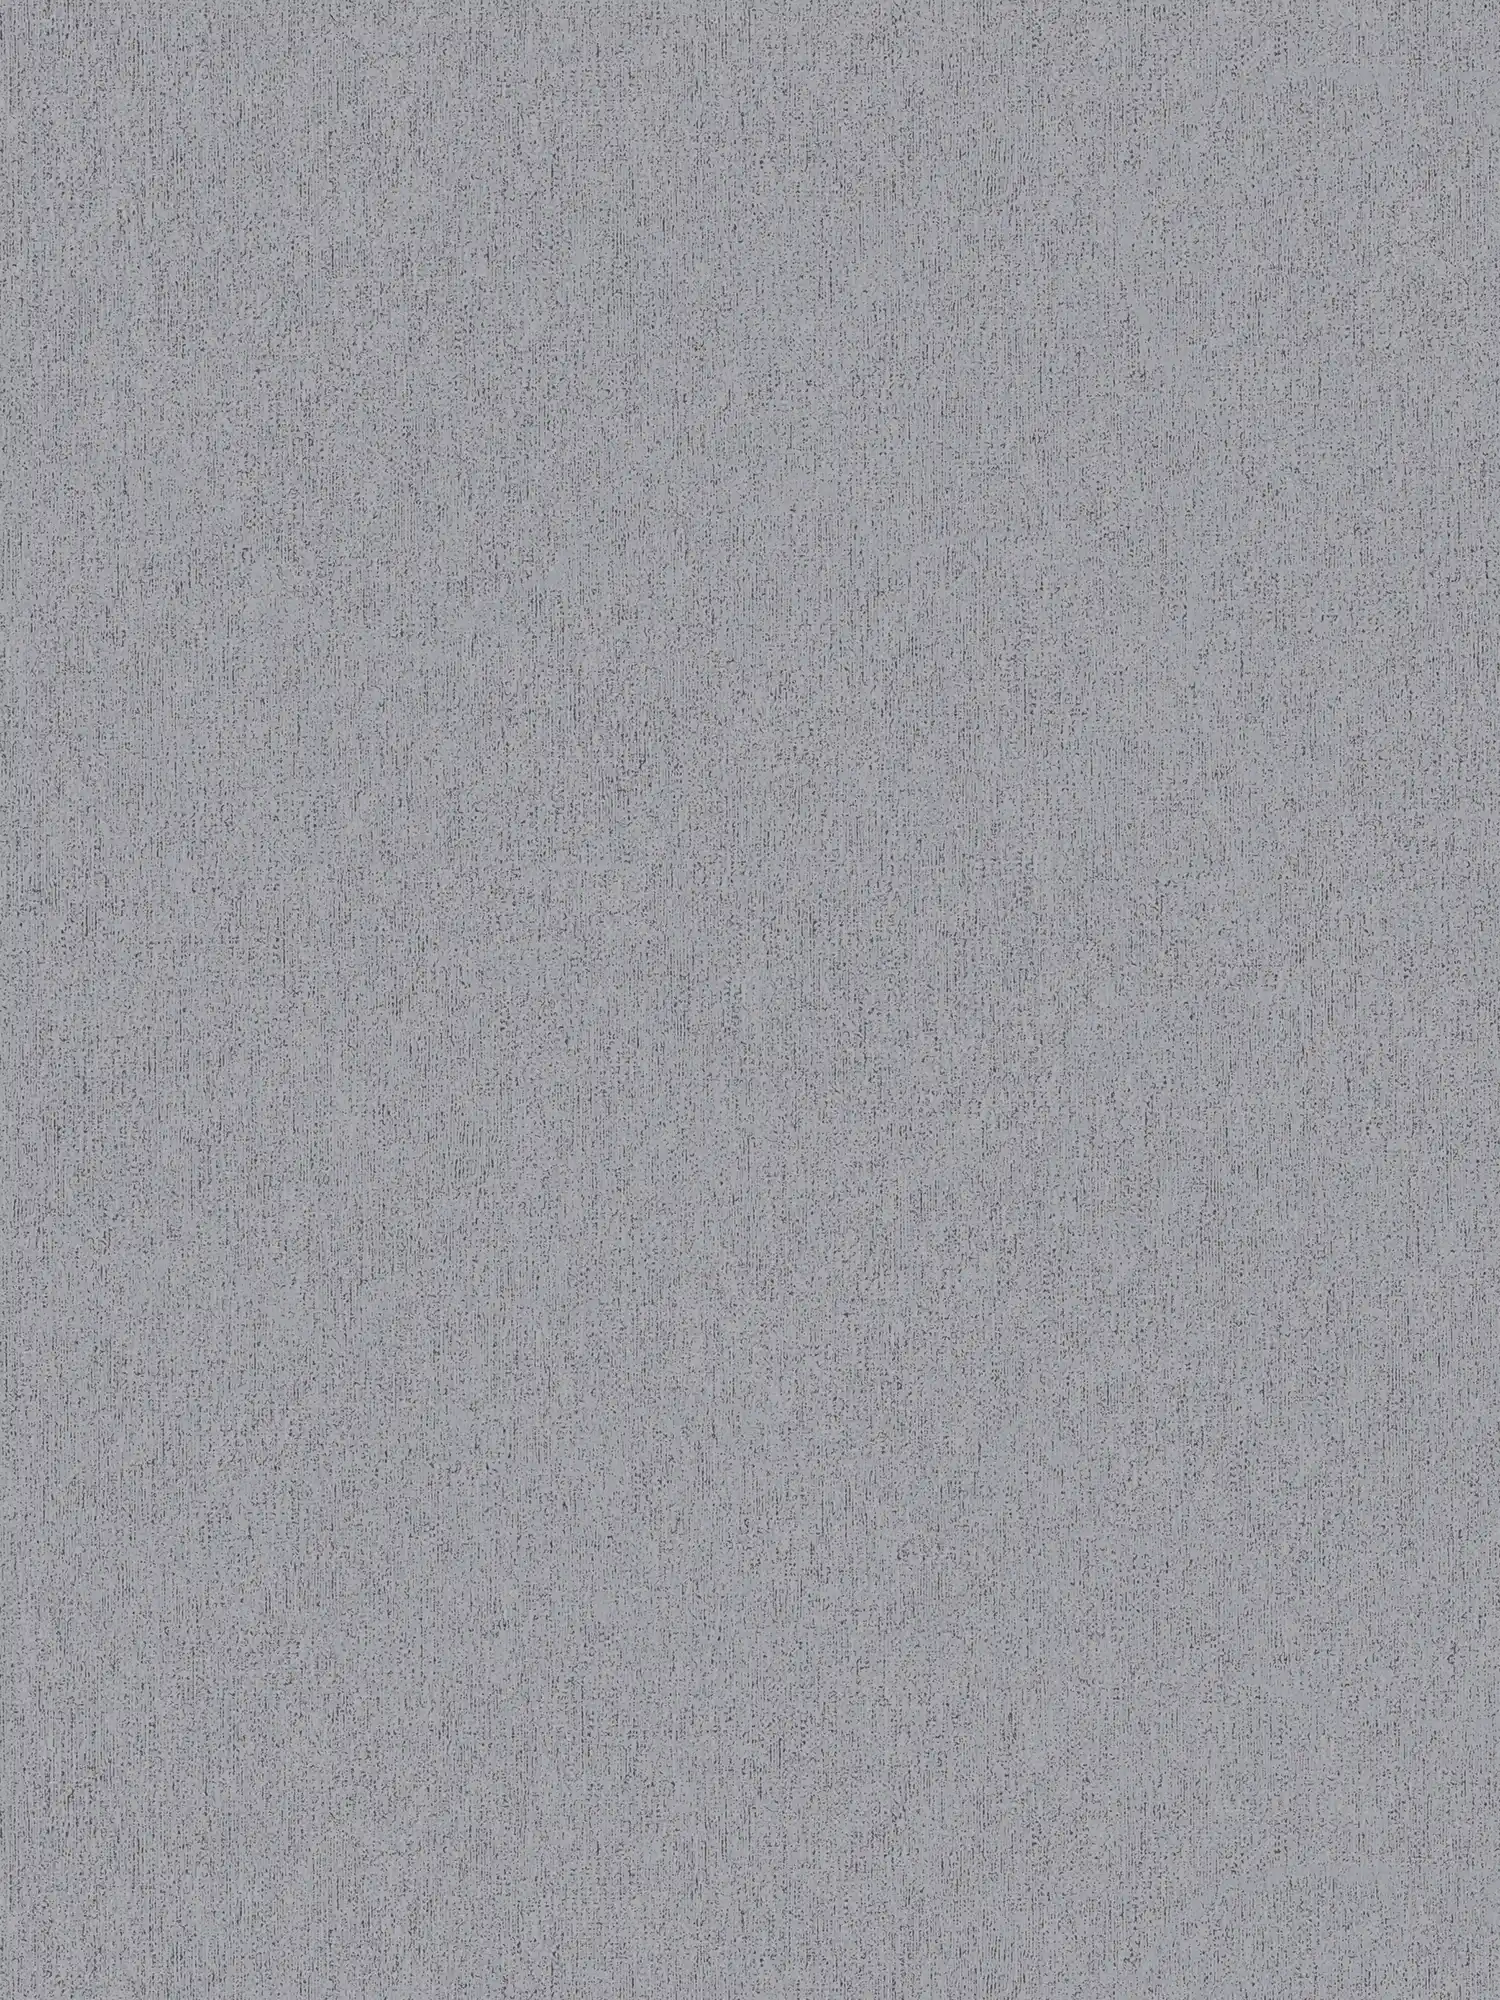 Carta da parati in tessuto non tessuto liscio con aspetto strutturato - grigio, grigio scuro
